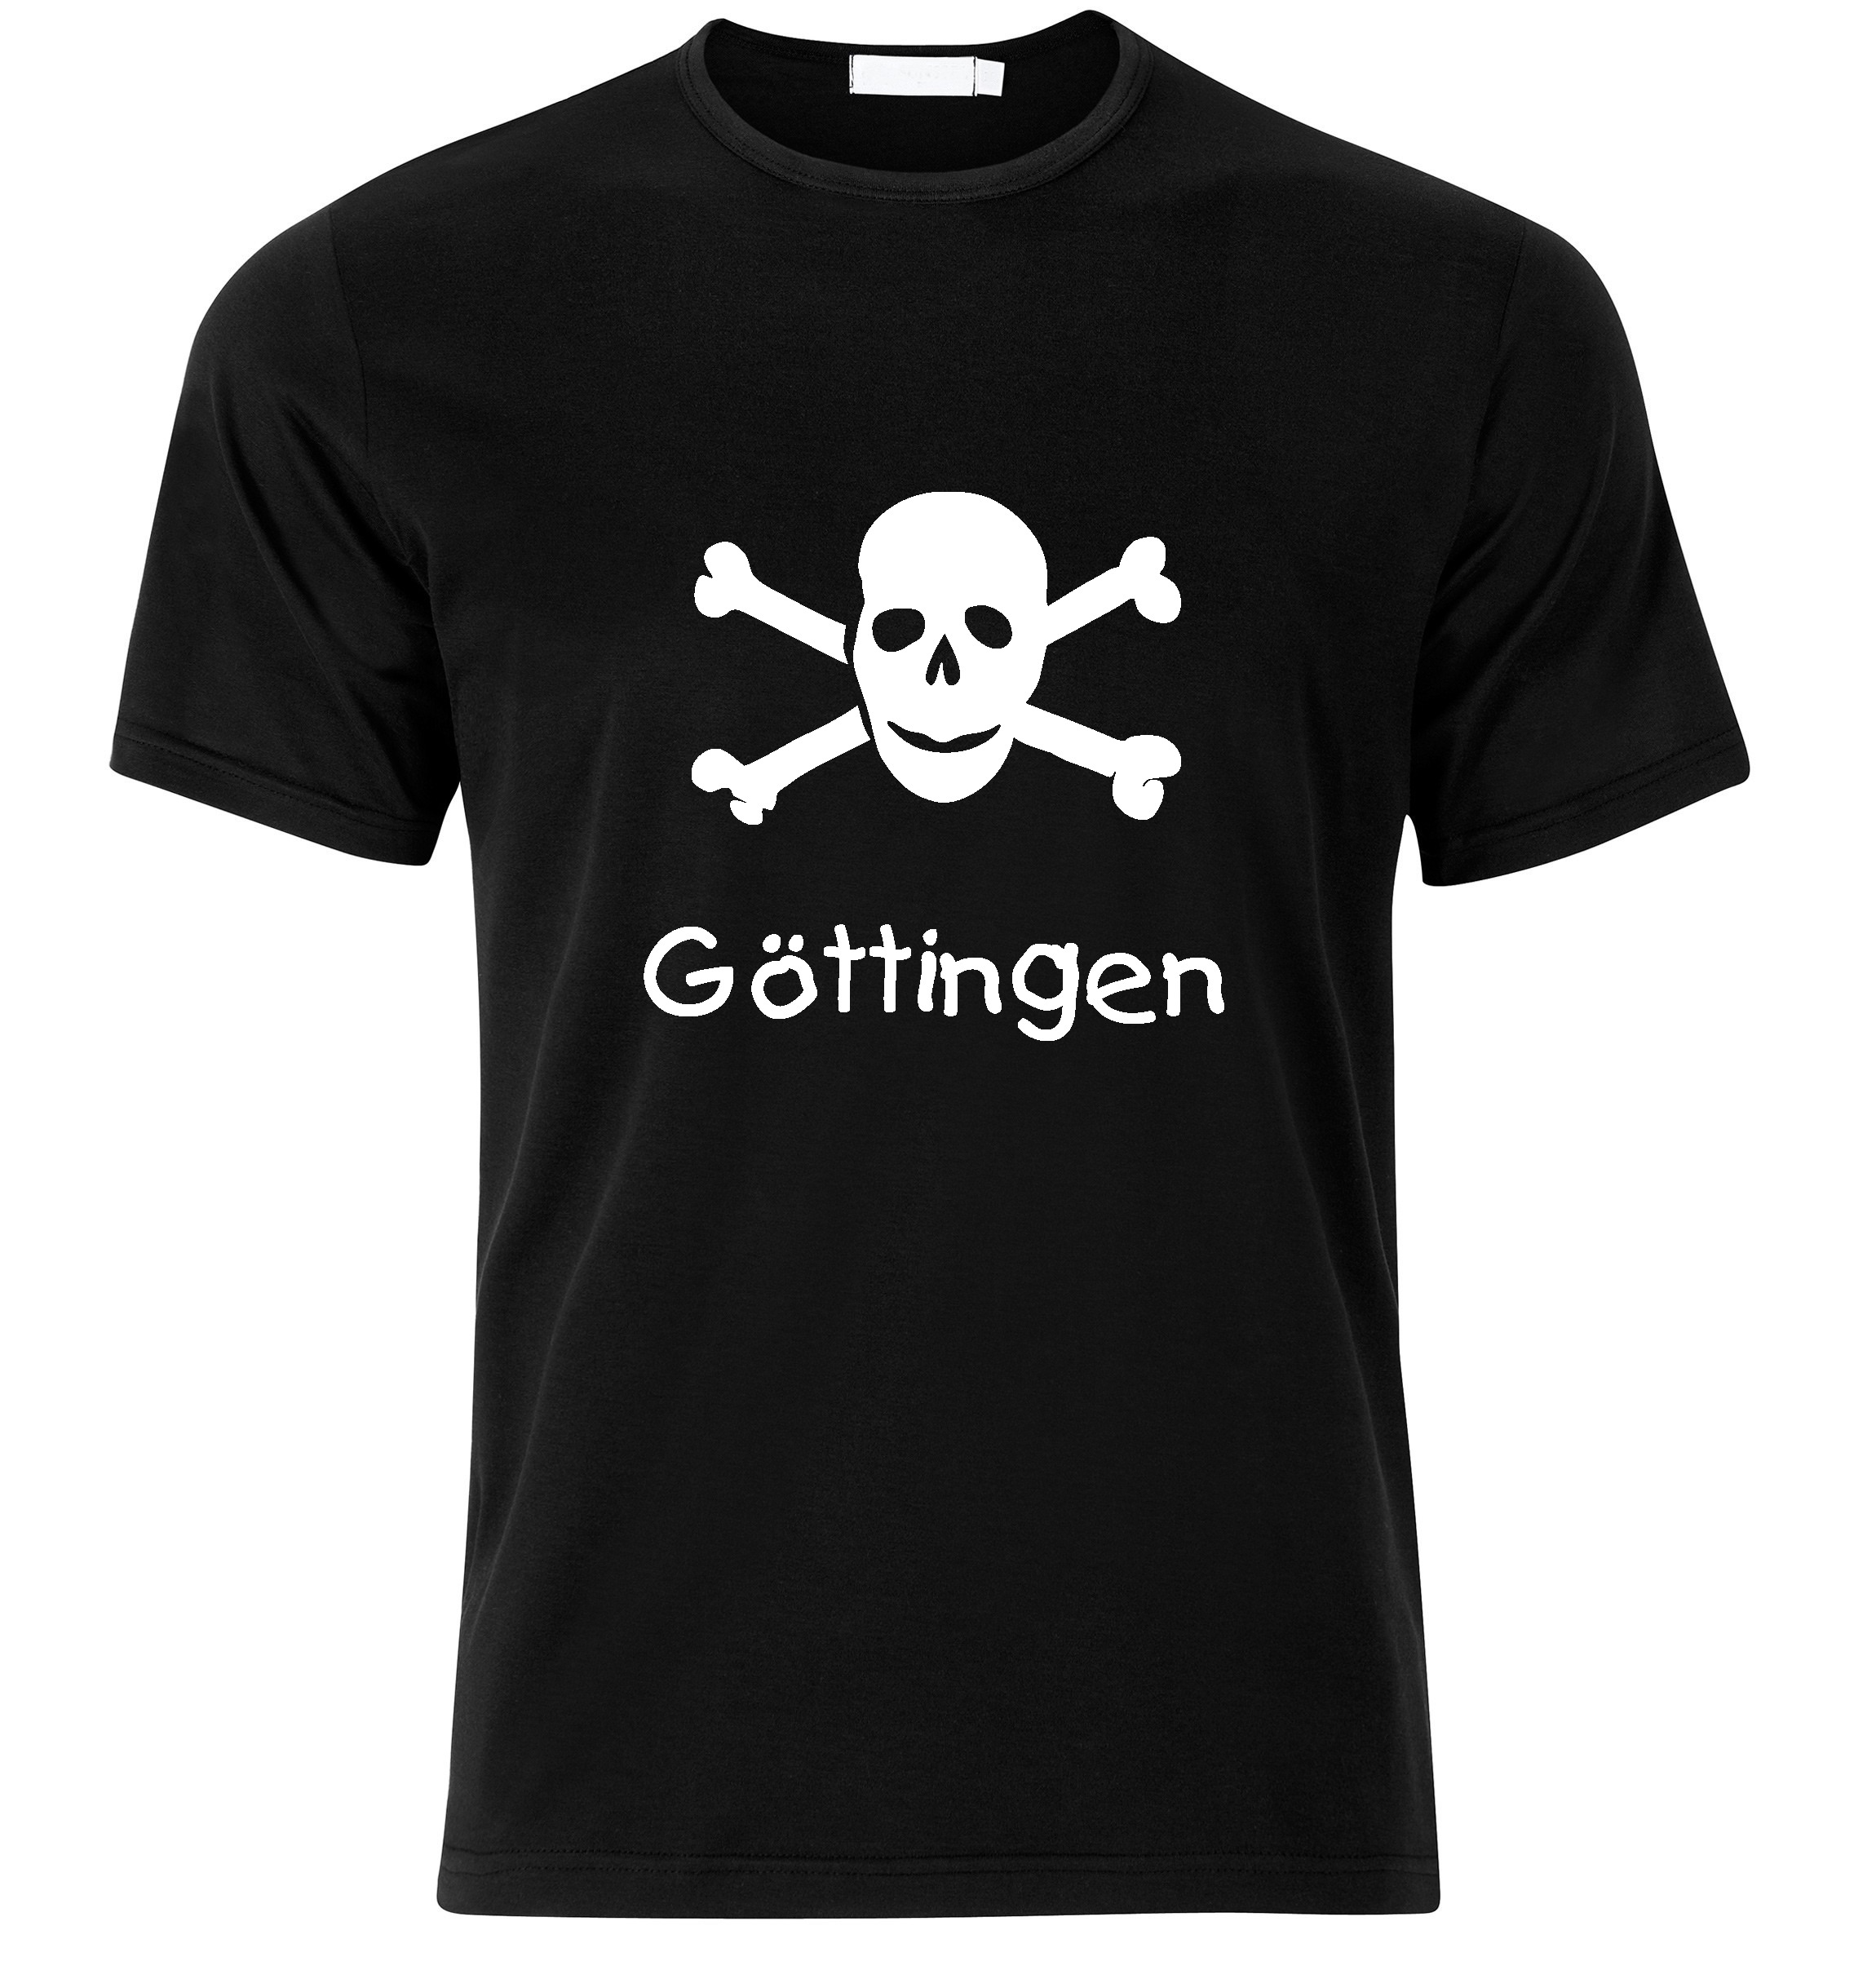 T-Shirt Göttingen Jolly Roger, Totenkopf